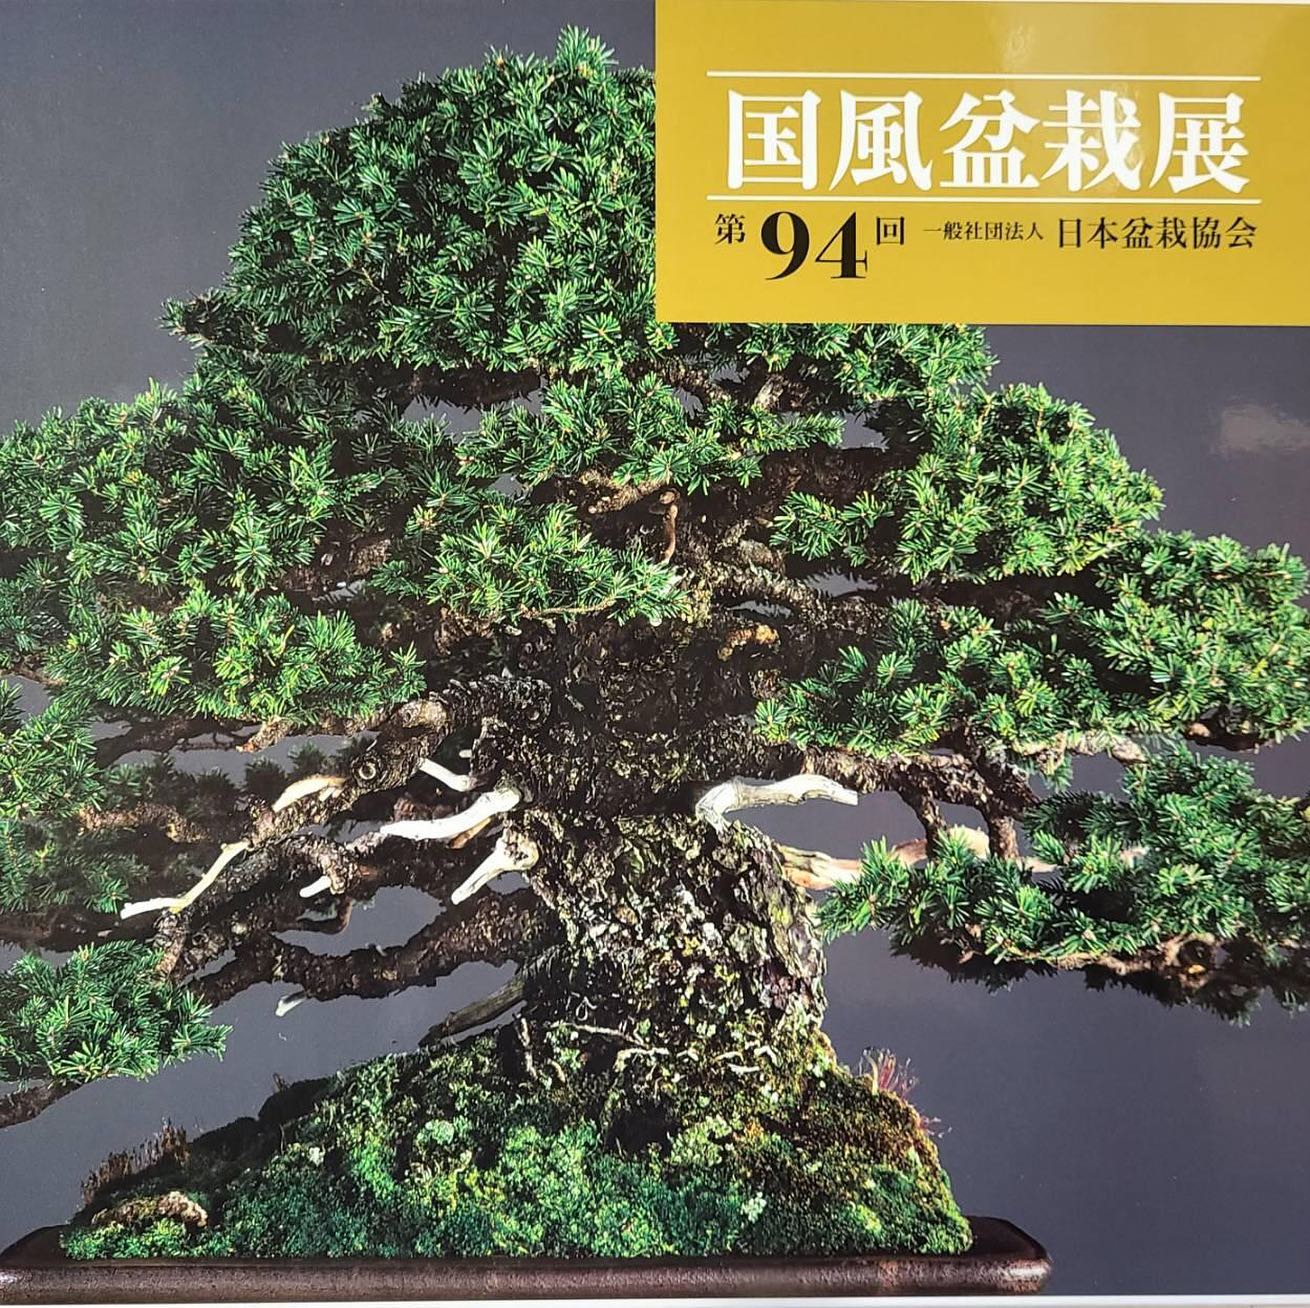 Kokufu No. 94 Album Cover, 2020